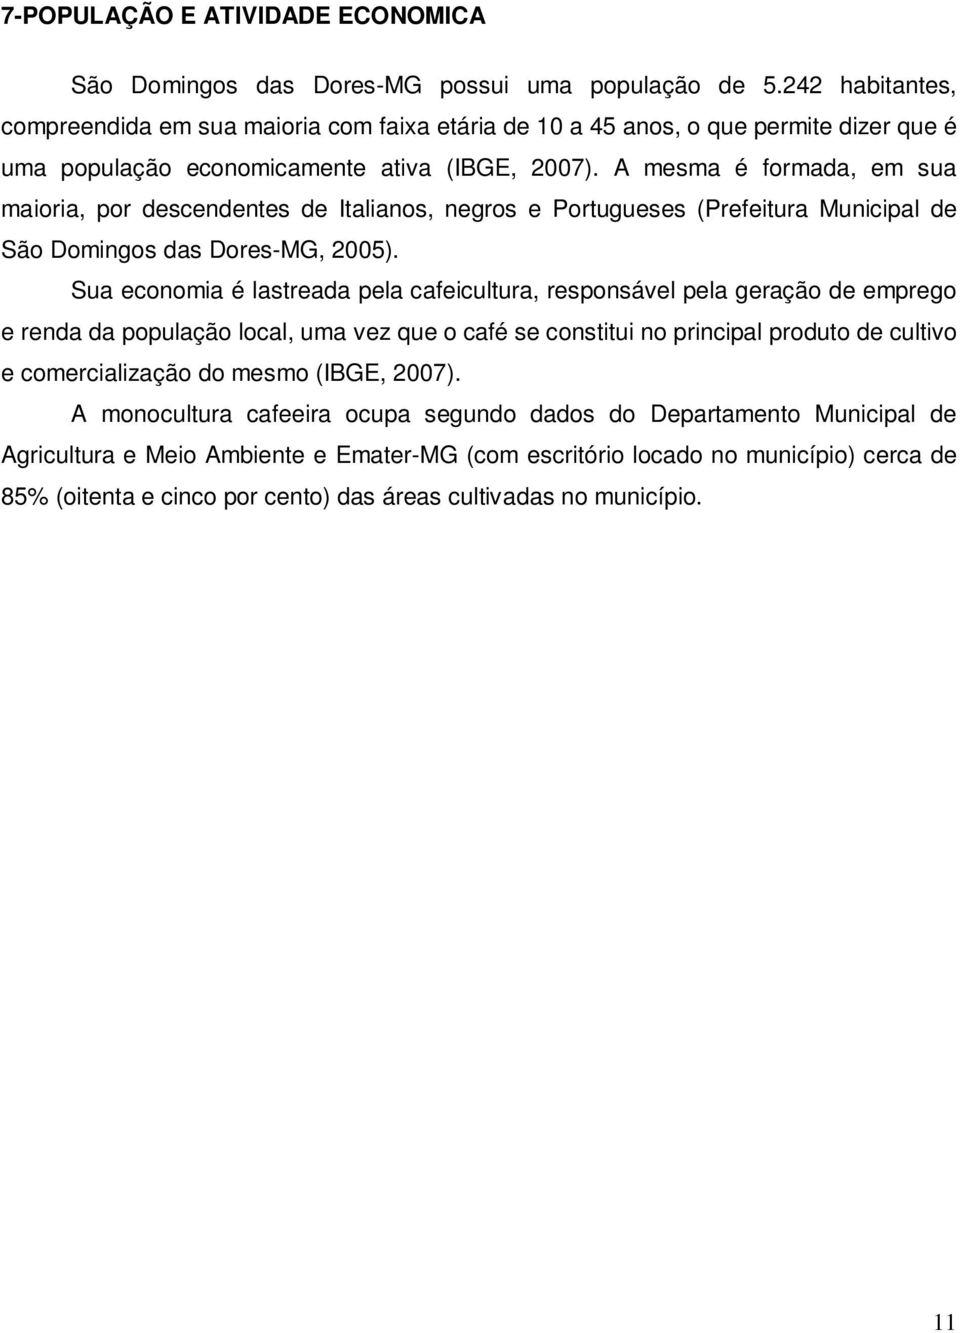 A mesma é formada, em sua maioria, por descendentes de Italianos, negros e Portugueses (Prefeitura Municipal de São Domingos das Dores-MG, 2005).